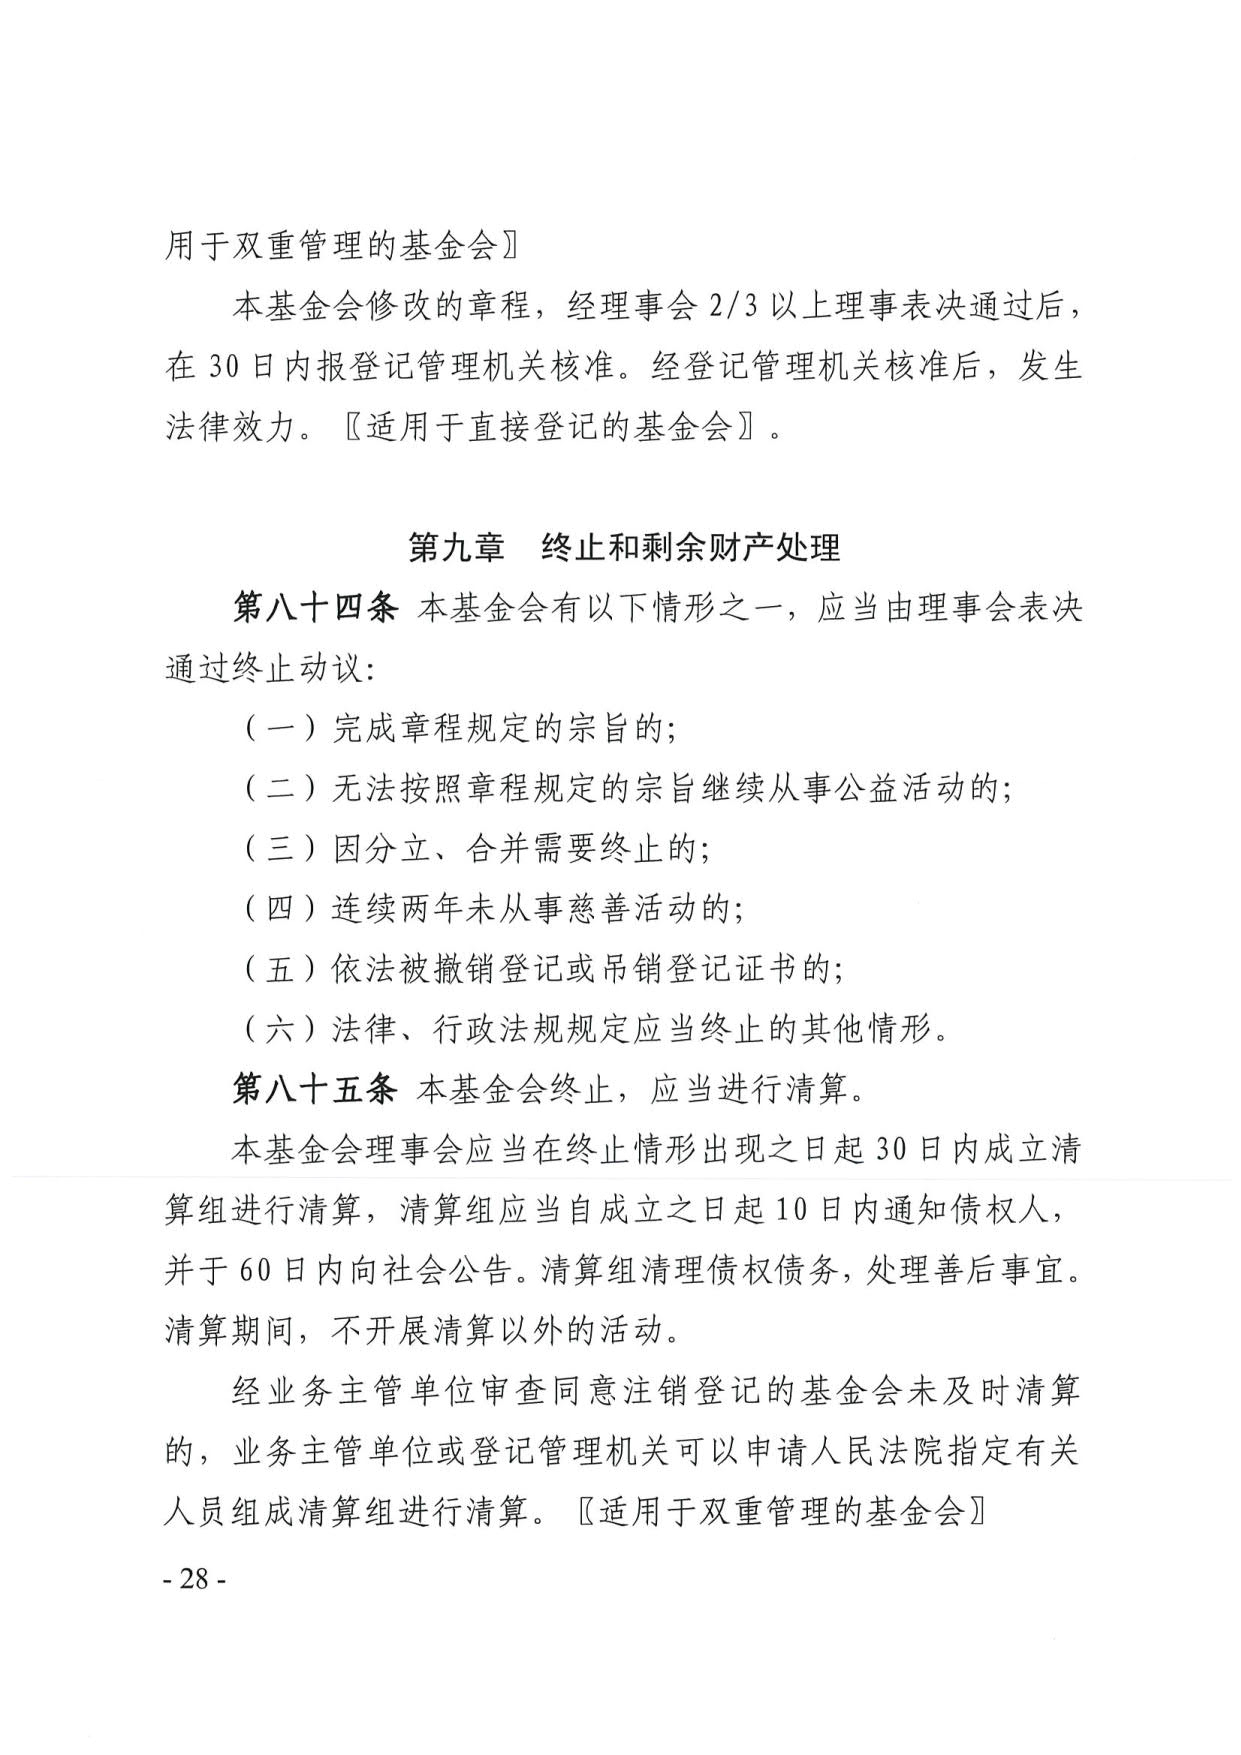 广东省民政厅关于印发《广东省基金会章程示范文本》的通知(4)_28.jpg